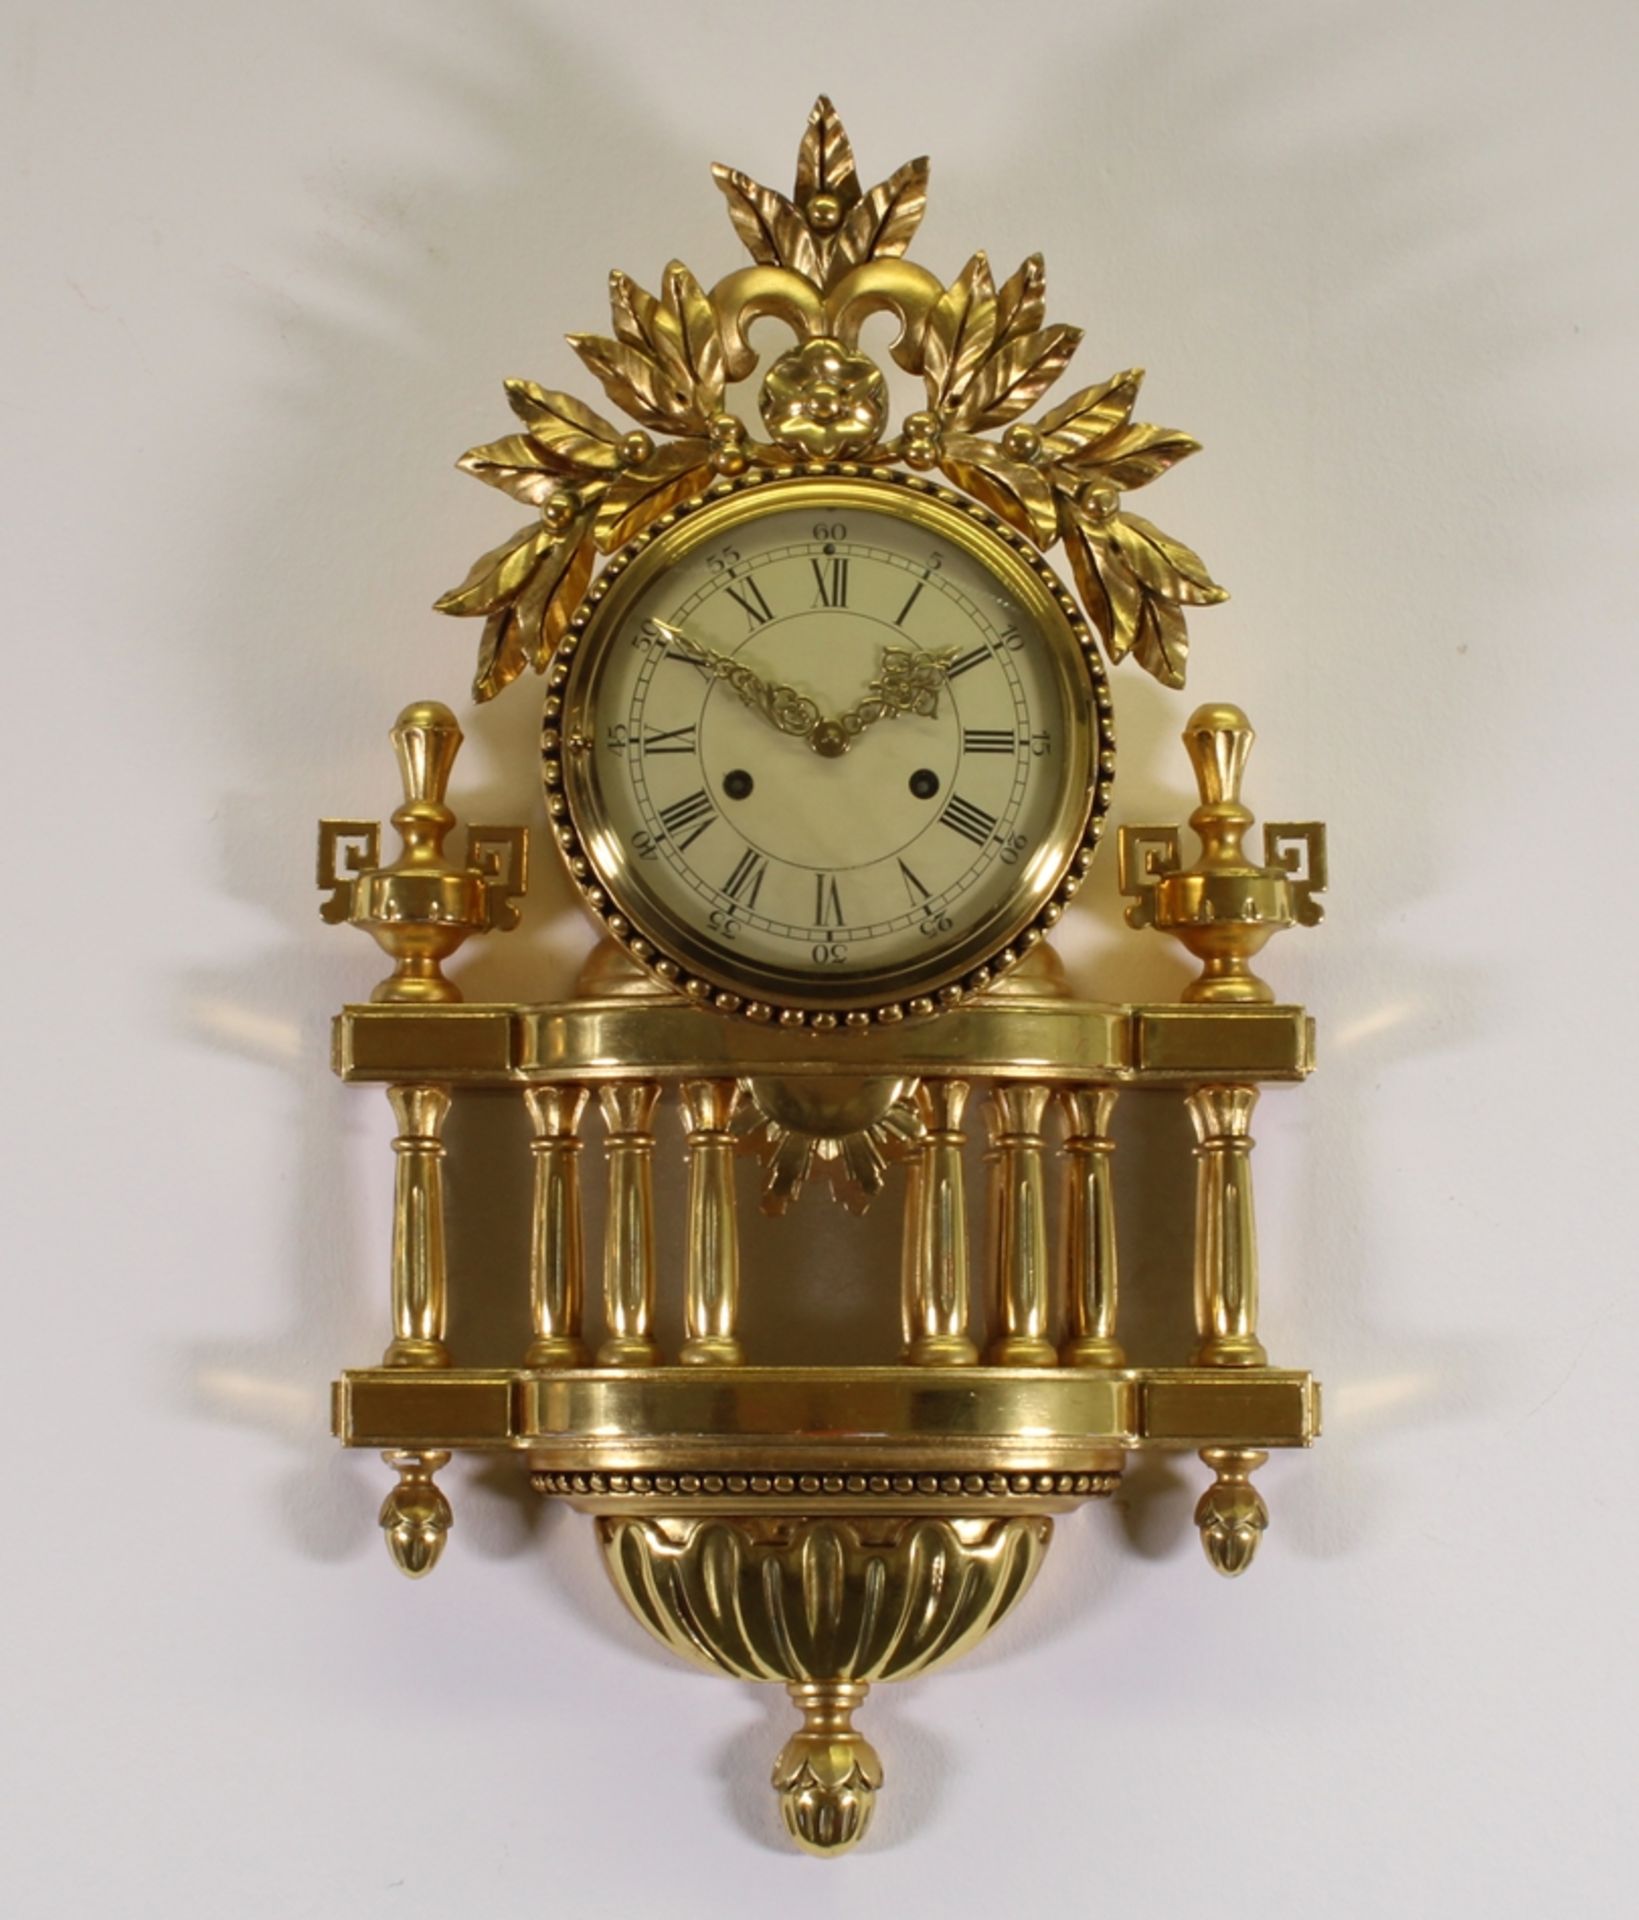 Carteluhr, Louis XVI-Stil, 20./21. Jh., Holz, vergoldet, Metall, Spiegelglas, Schlag auf Glocke, 60